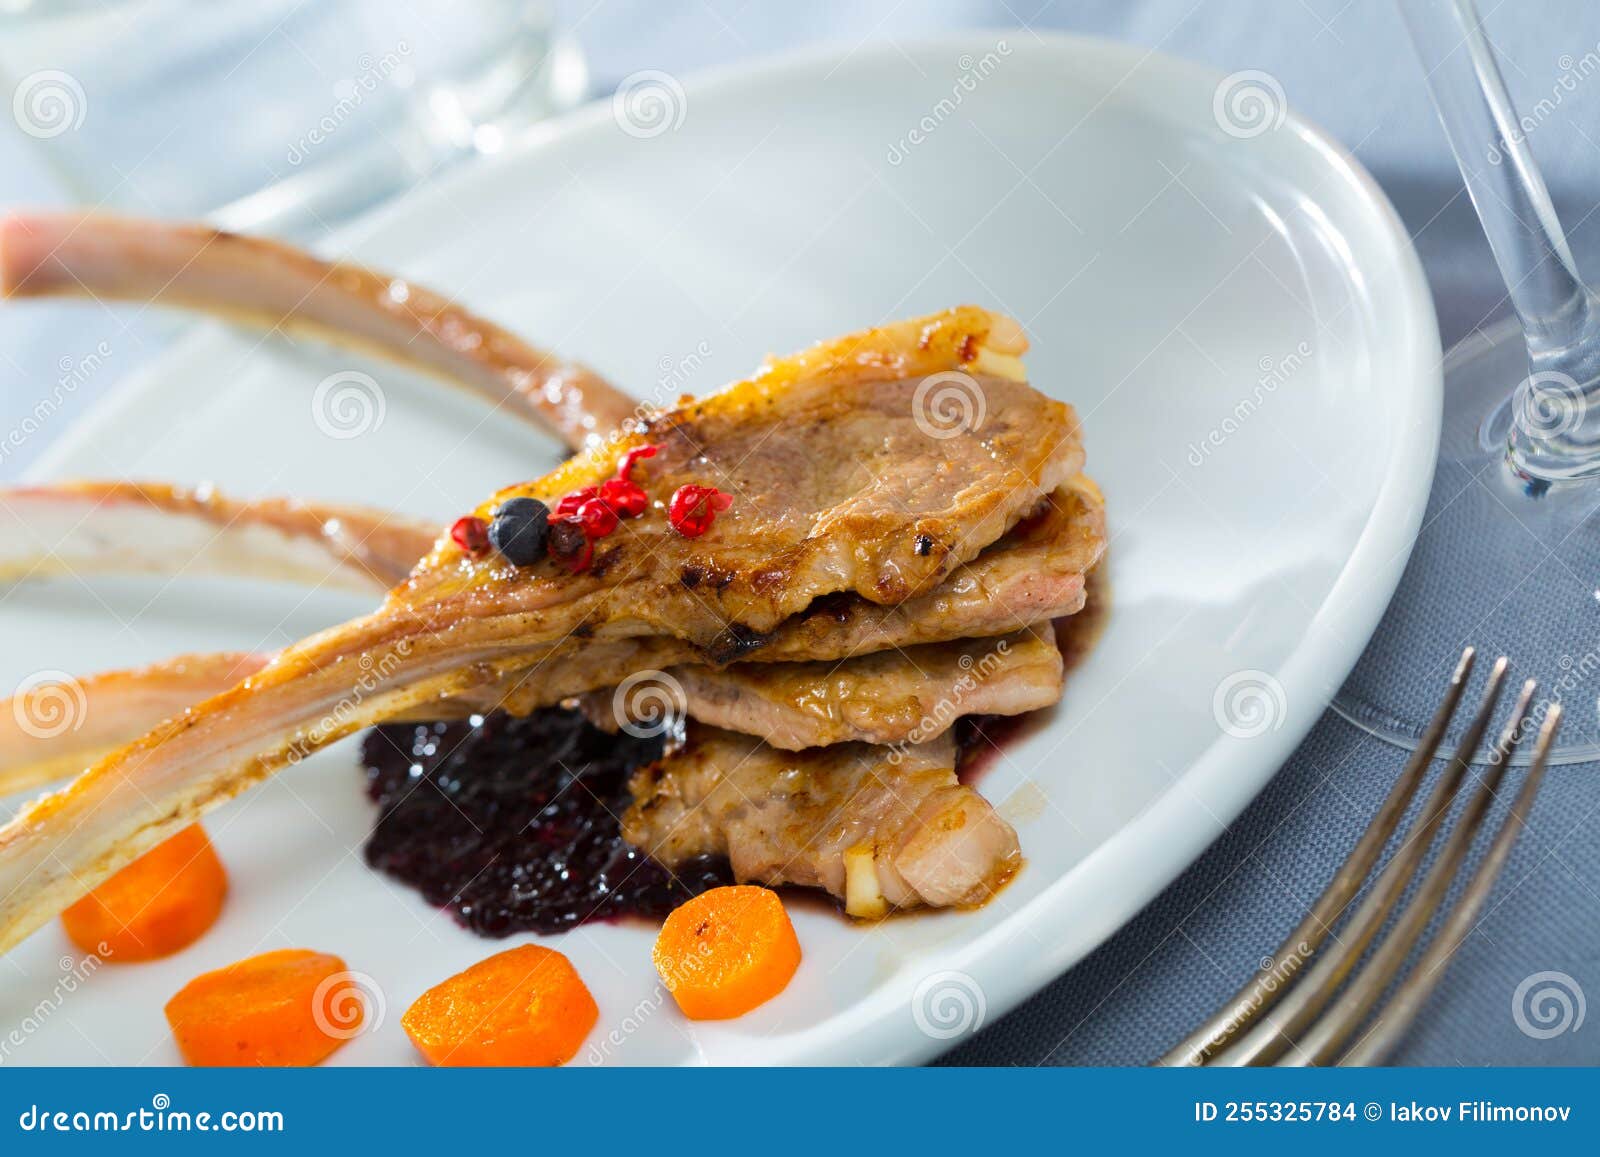 Lammkarre Mit Sauce Und Karotten Stockfoto - Bild von hintergrund ...